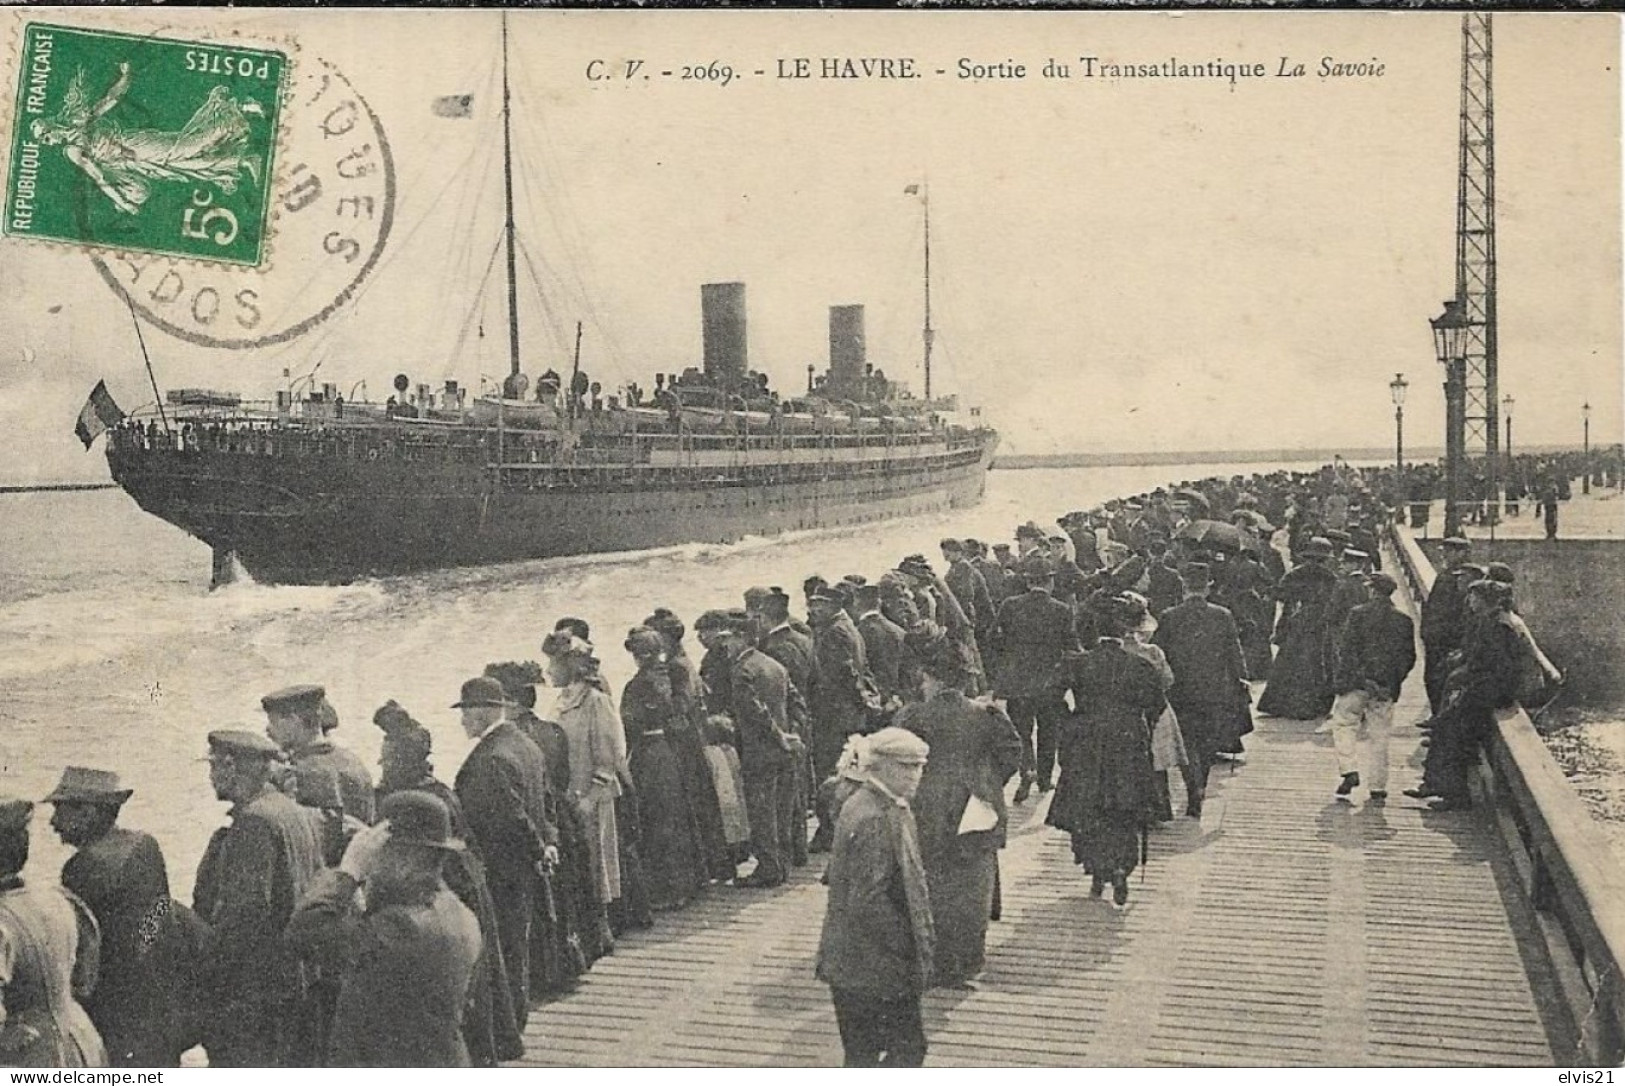 LE HAVRE Sortie Du Transatlantique "La Savoie" - Port